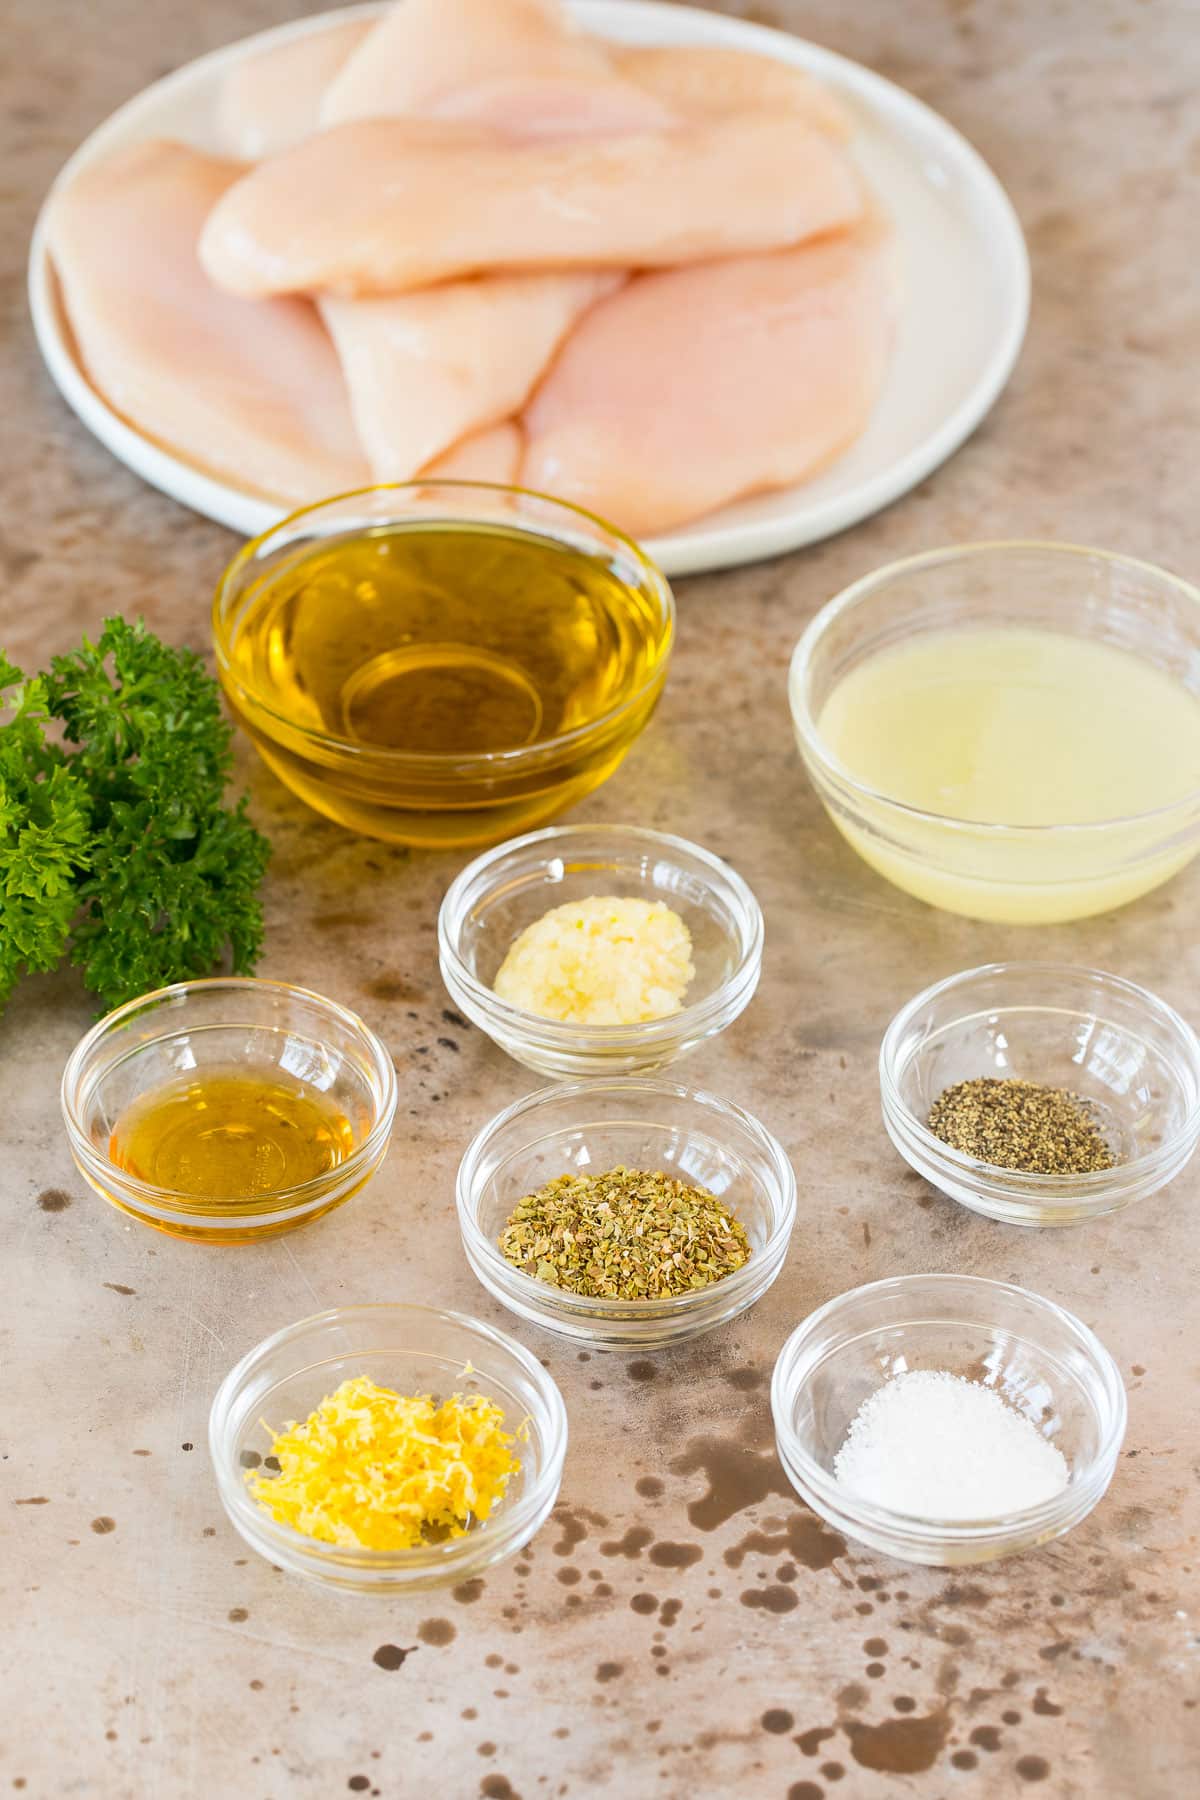 Ingredients including chicken, olive oil, lemon juice and seasonings.